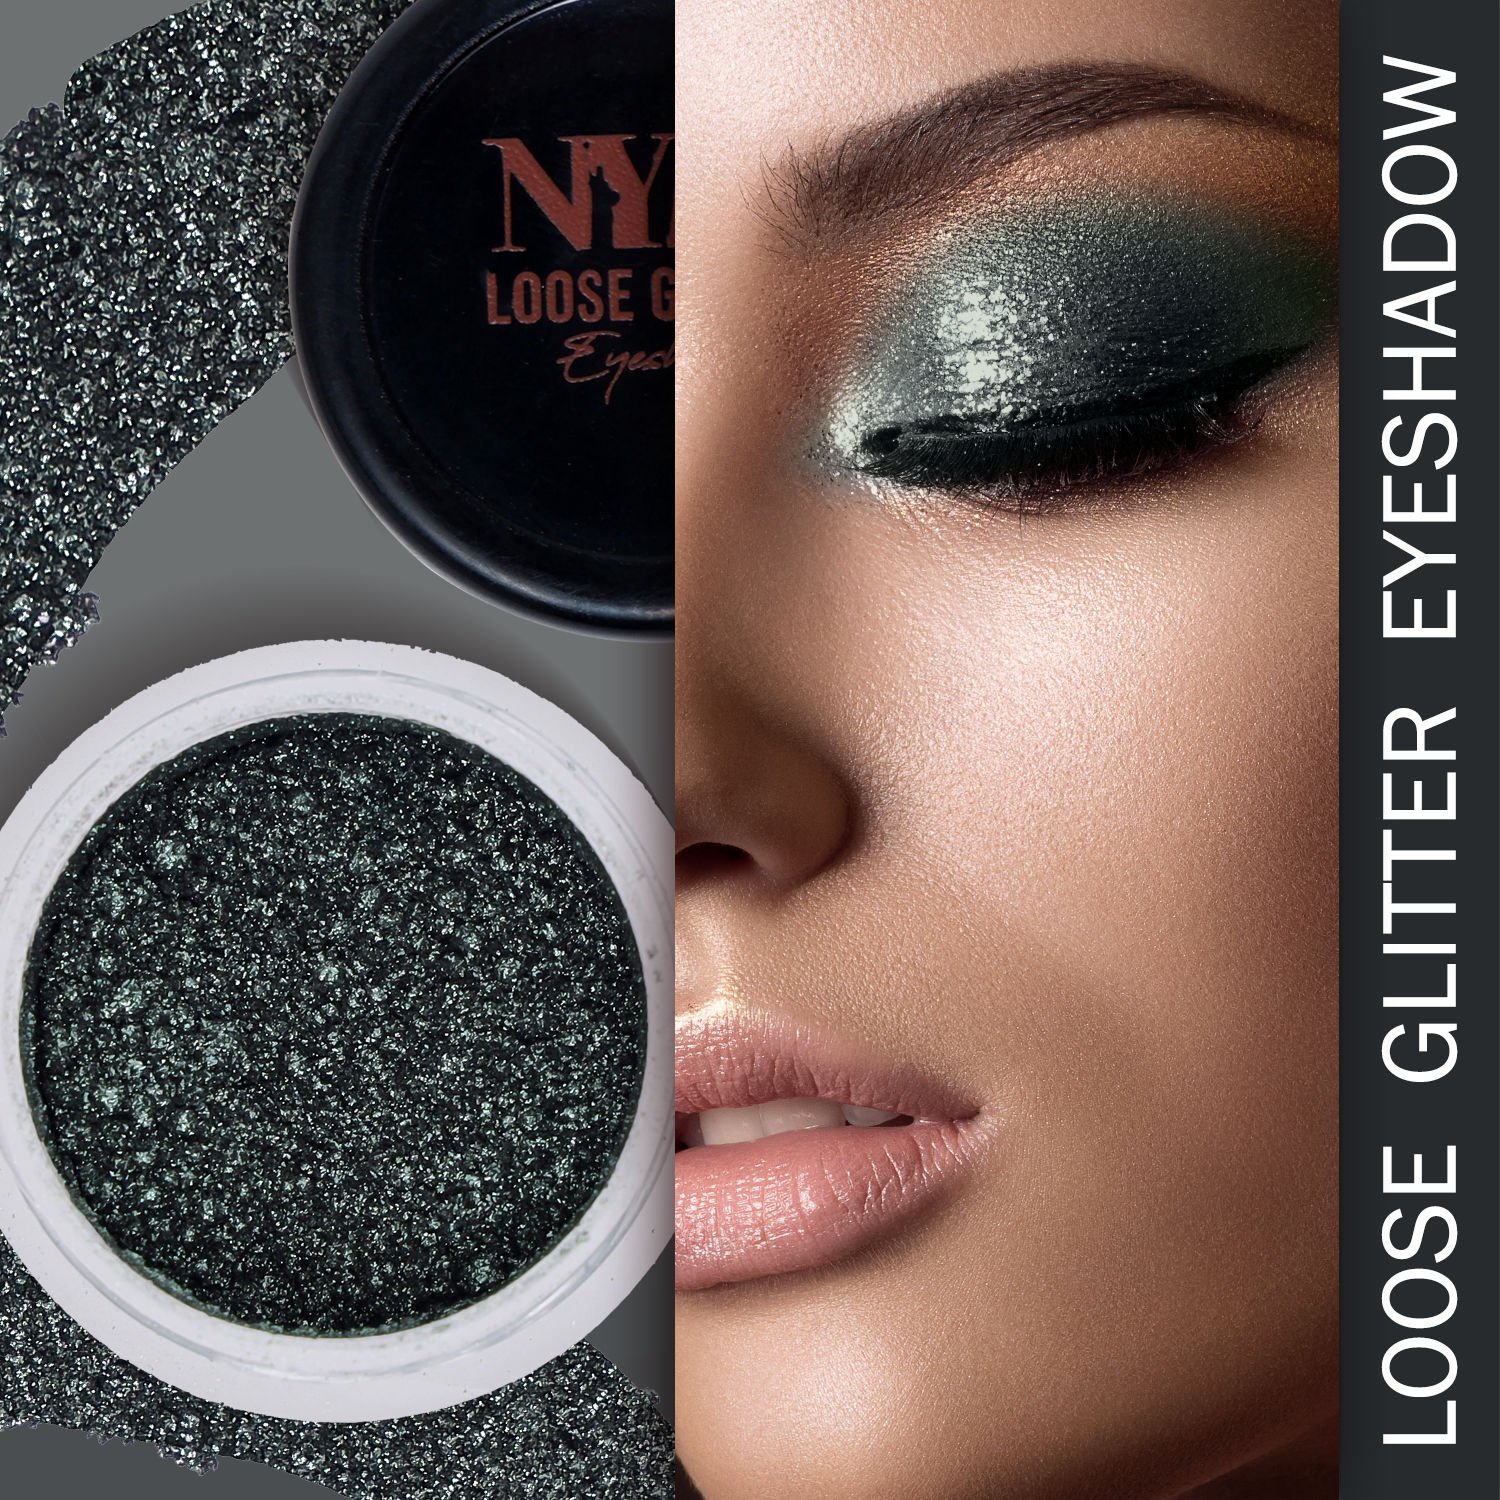 NY Bae Loose Glitter Eyeshadow - Emerald Green 09 (2 g)